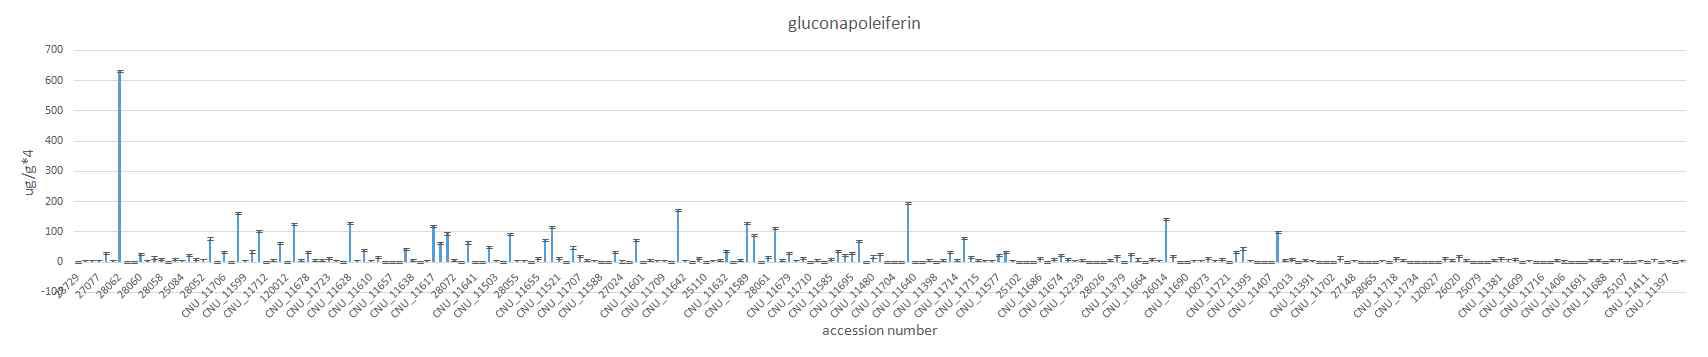 230 계통의 수집단에서 gluconapoleiferin 성분 함량 변이 조사